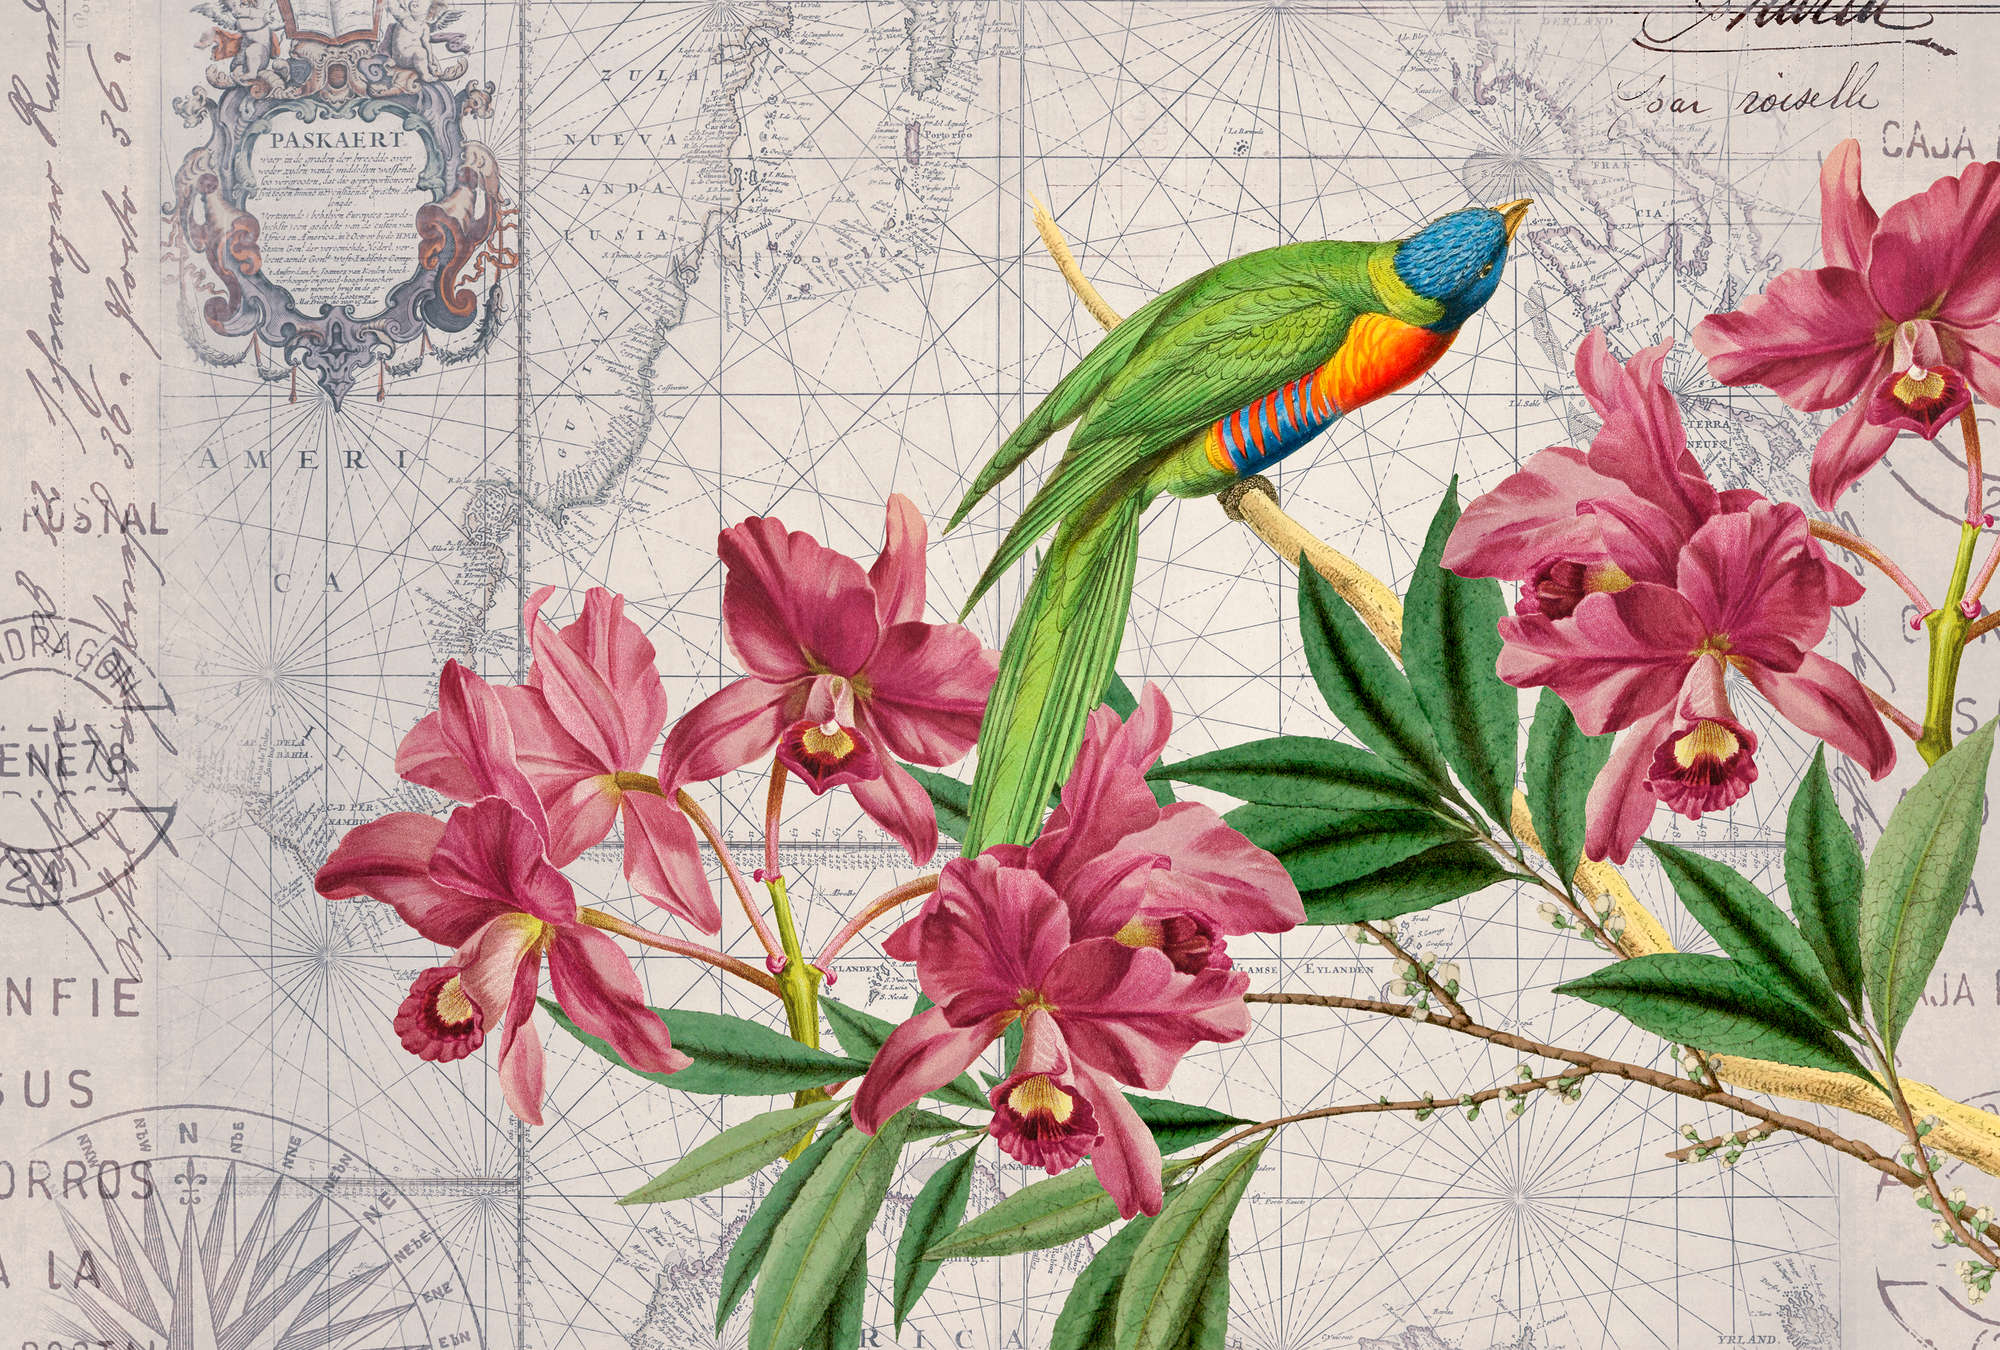             Papier peint Vintage Cartes géographiques, perroquet & fleurs
        